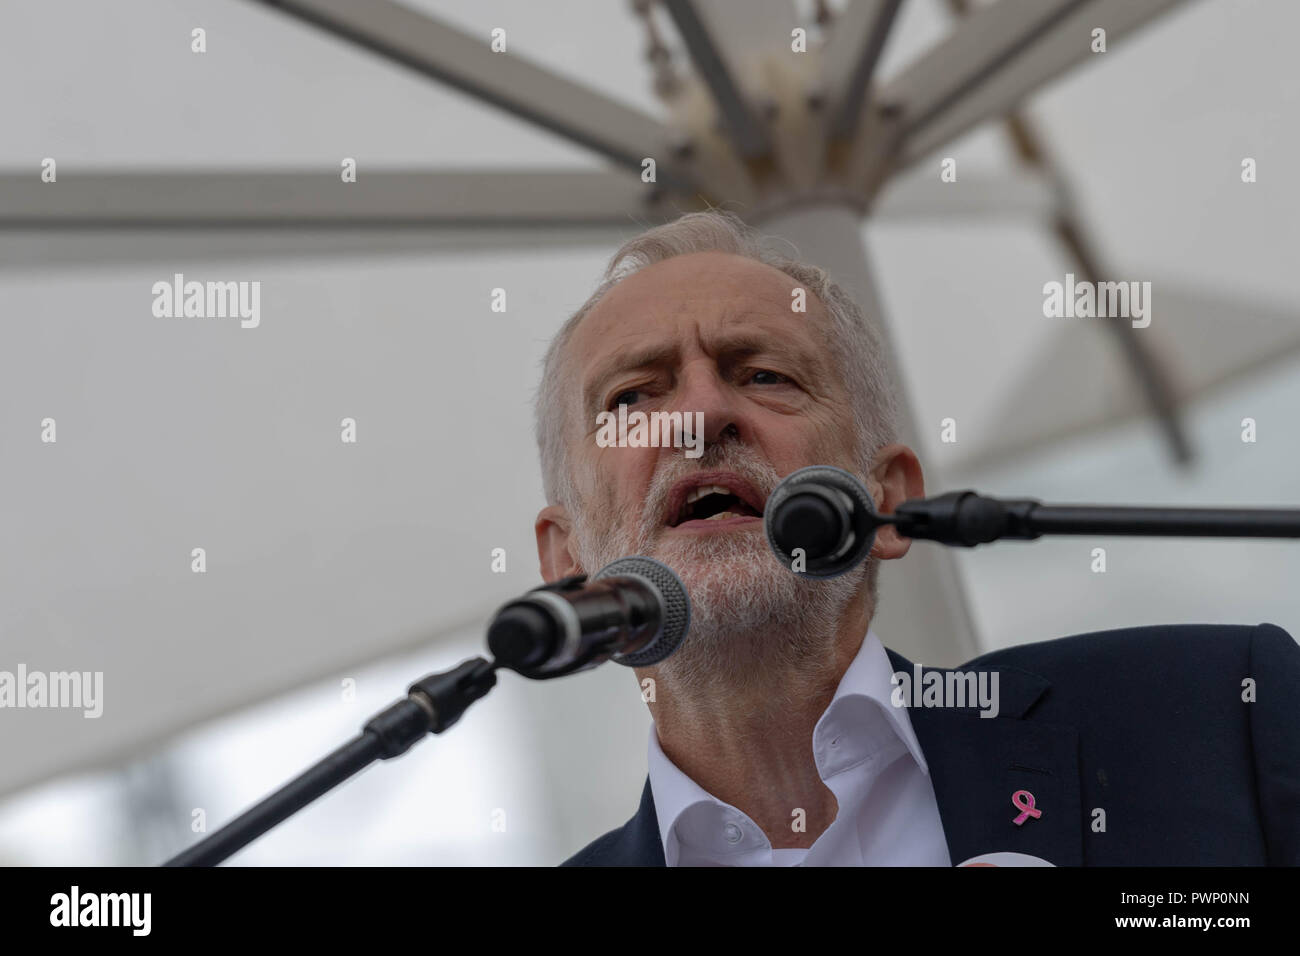 Londres 17 octobre 2018 Further Education Funding protester dans le centre de Londres Jeremy Corbyn parle avec le rallye. Ian Davidson Crédit/Alamy Live News Banque D'Images